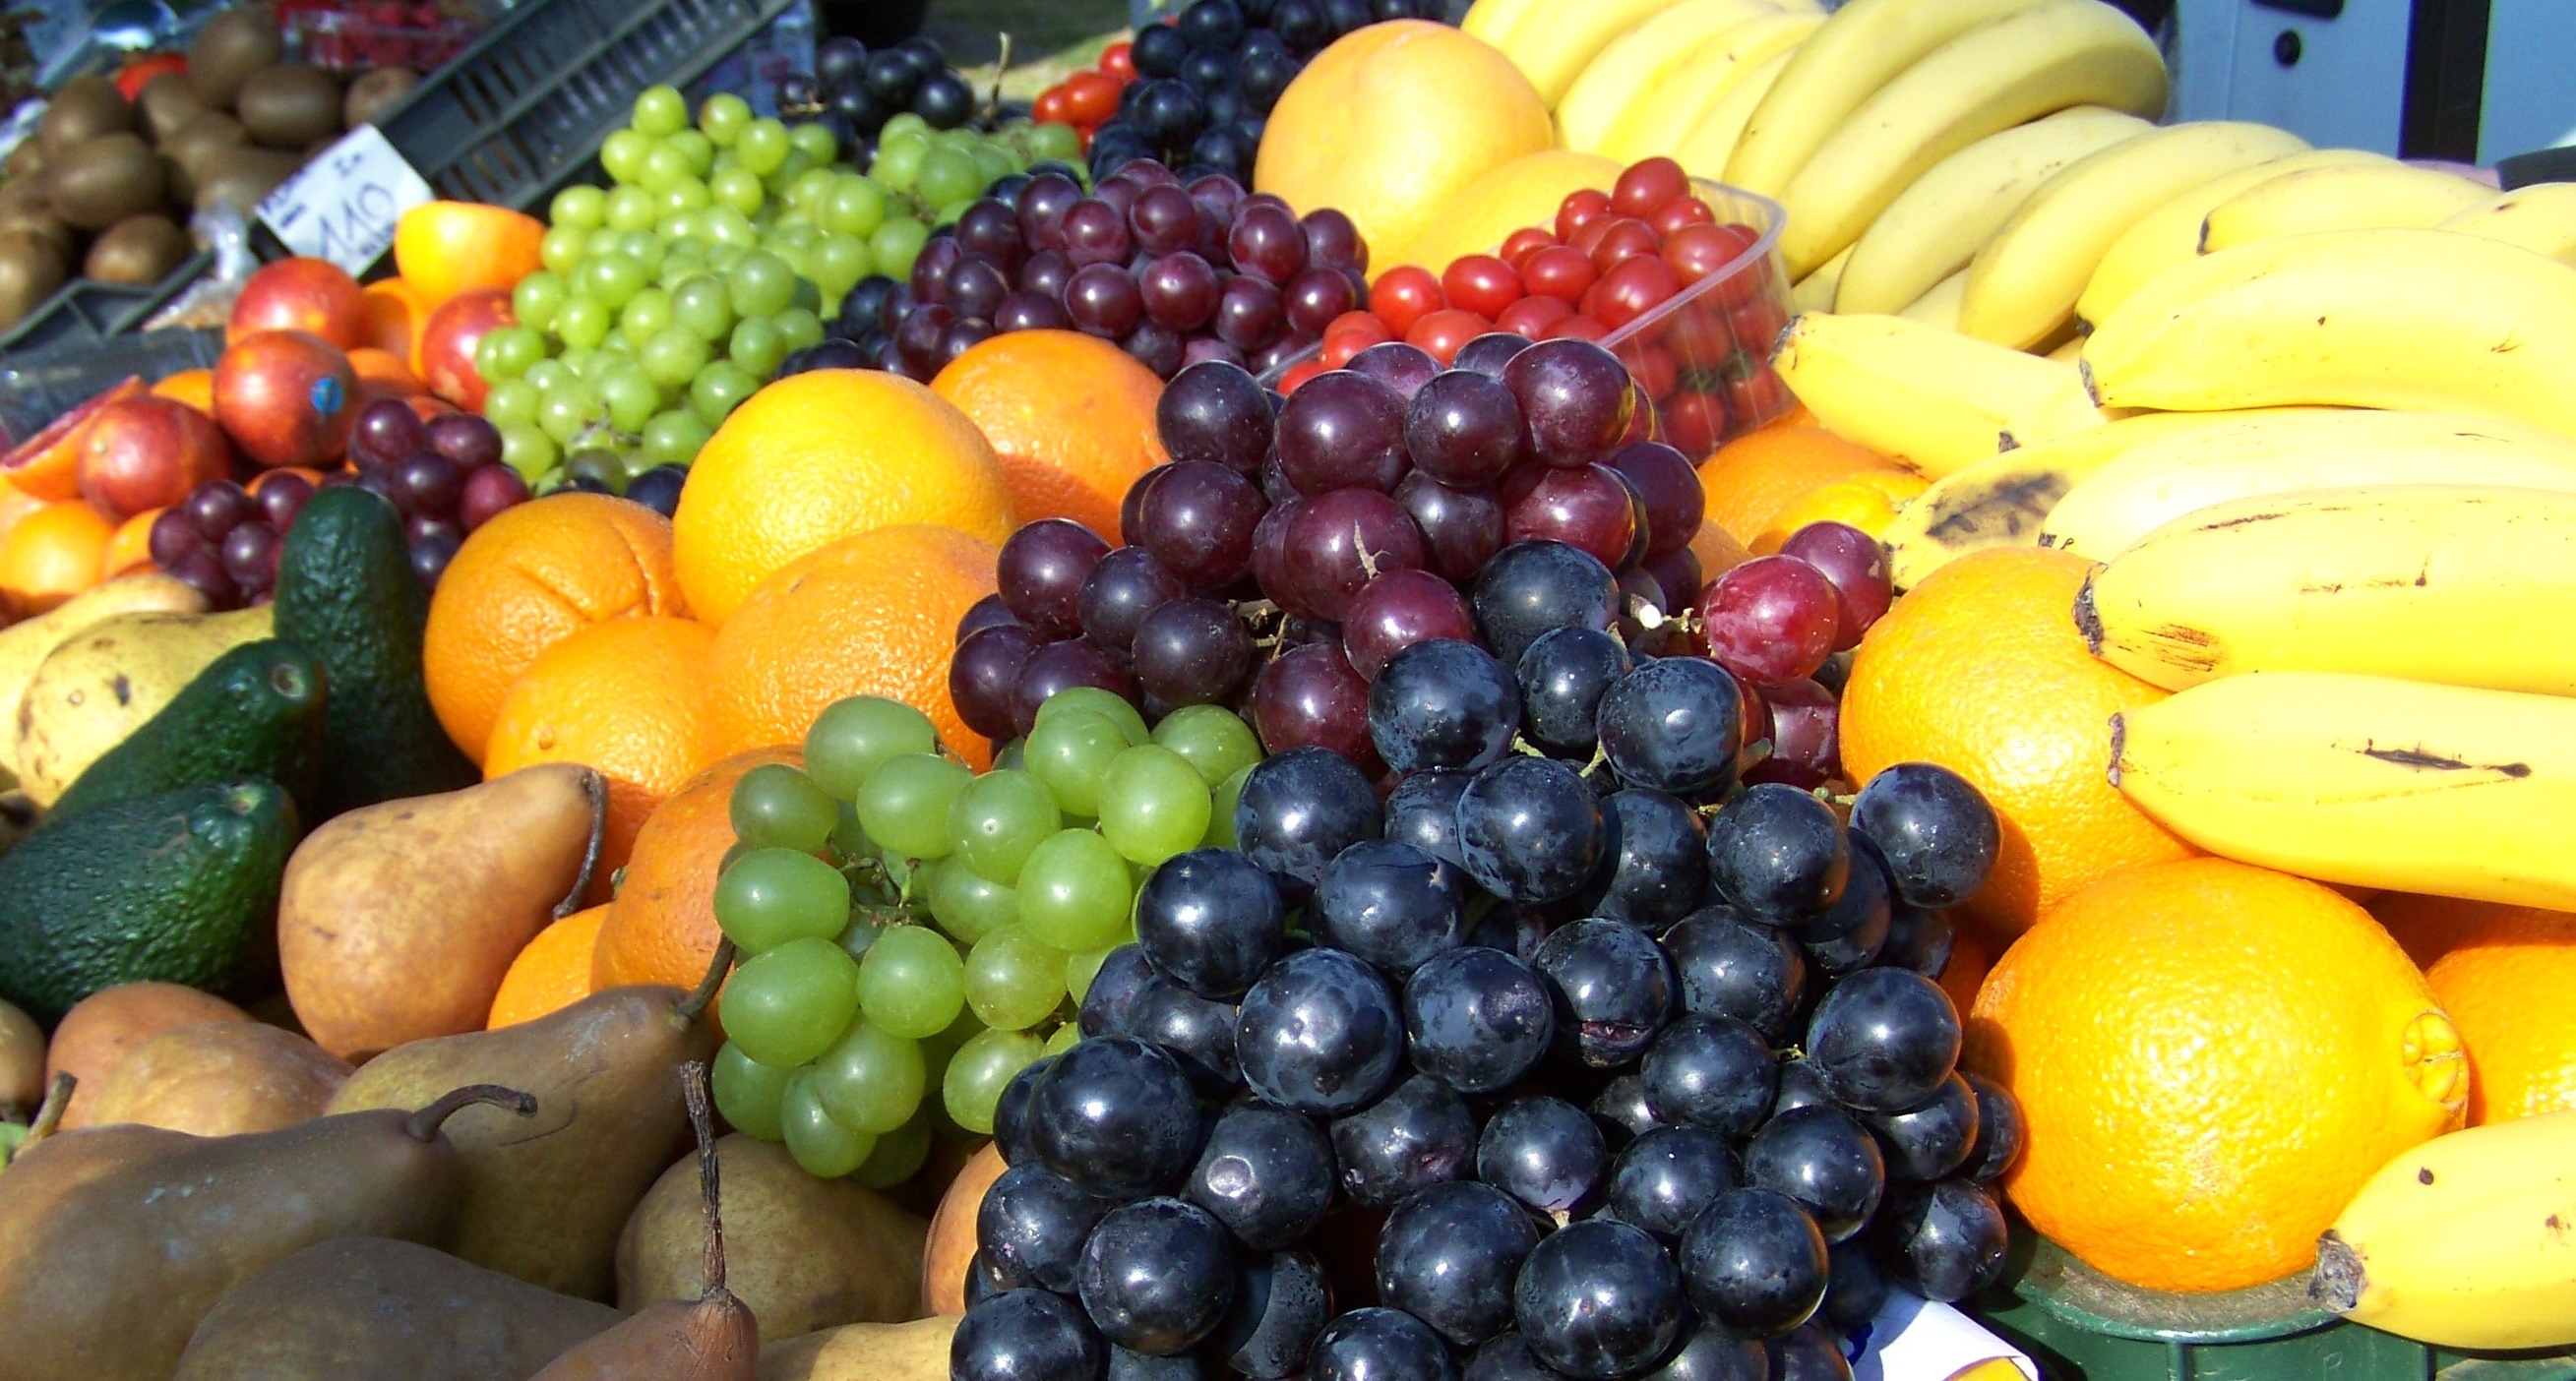 grapes,banana,orange and pear fruits